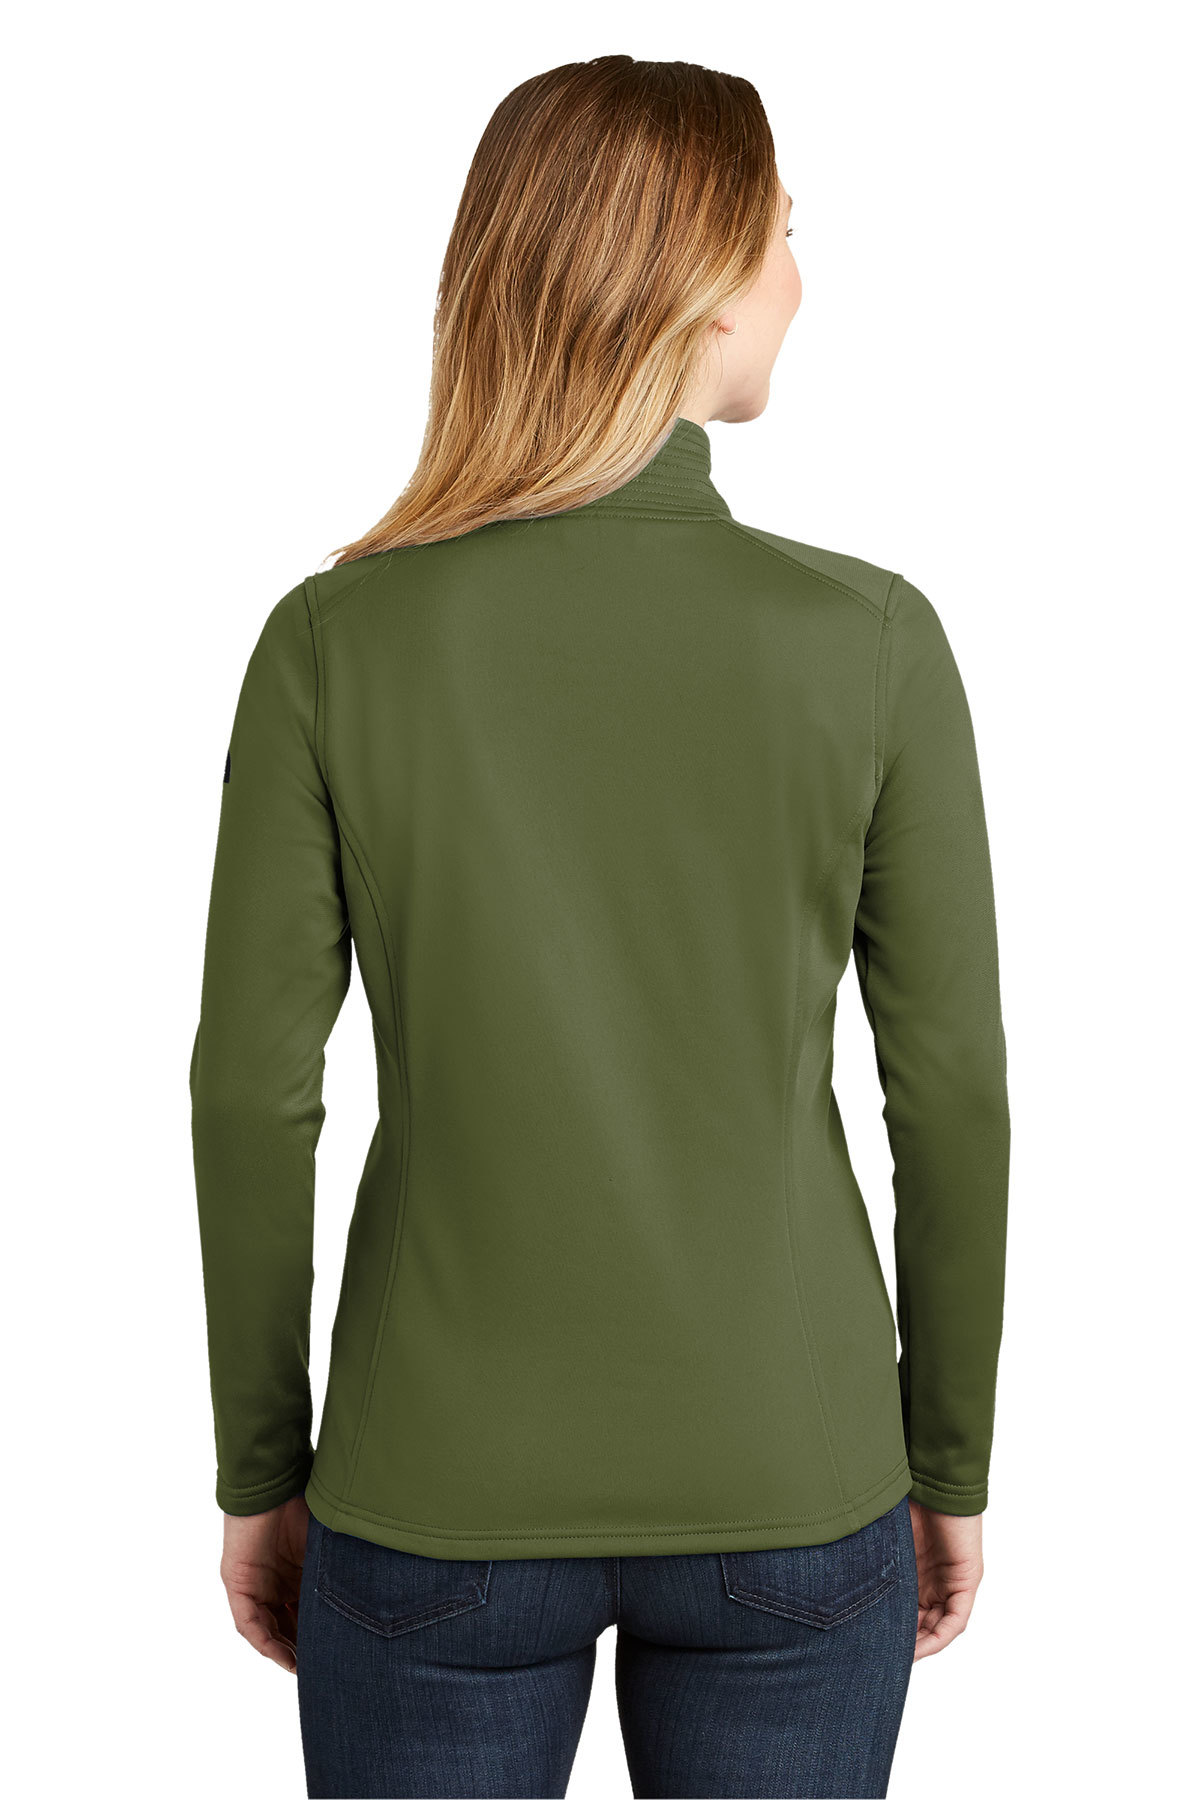 The North Face ® Ladies Tech 1/4-Zip Fleece | Product | SanMar